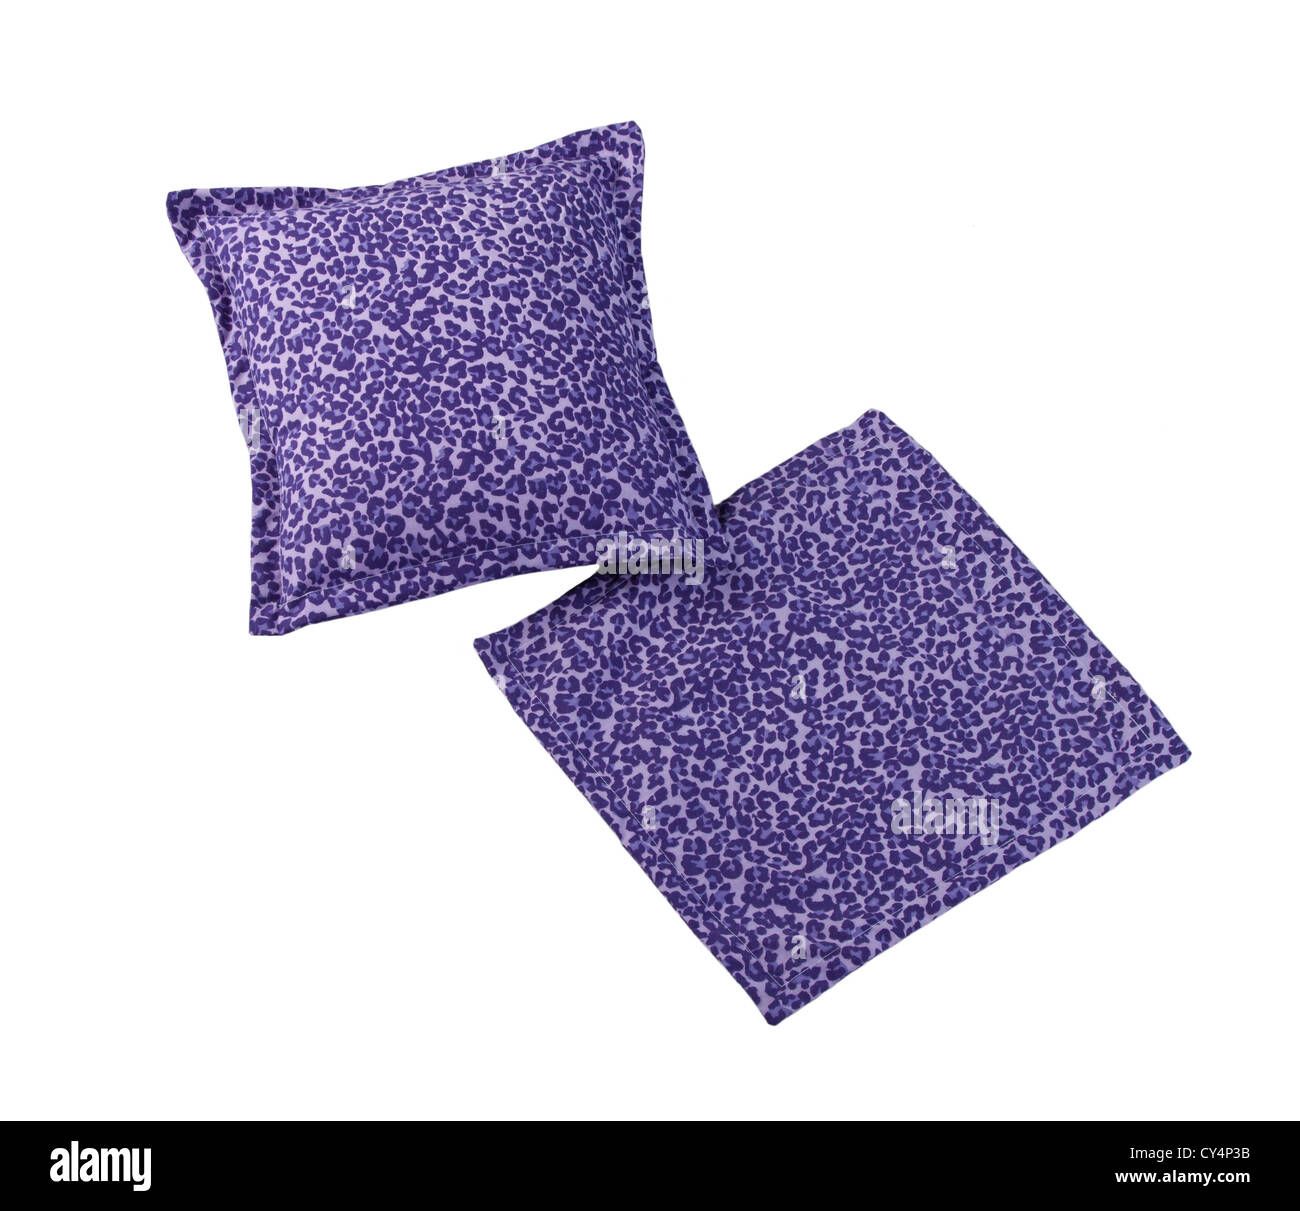 Magnifique coussin oreiller violet sur blanc Banque D'Images